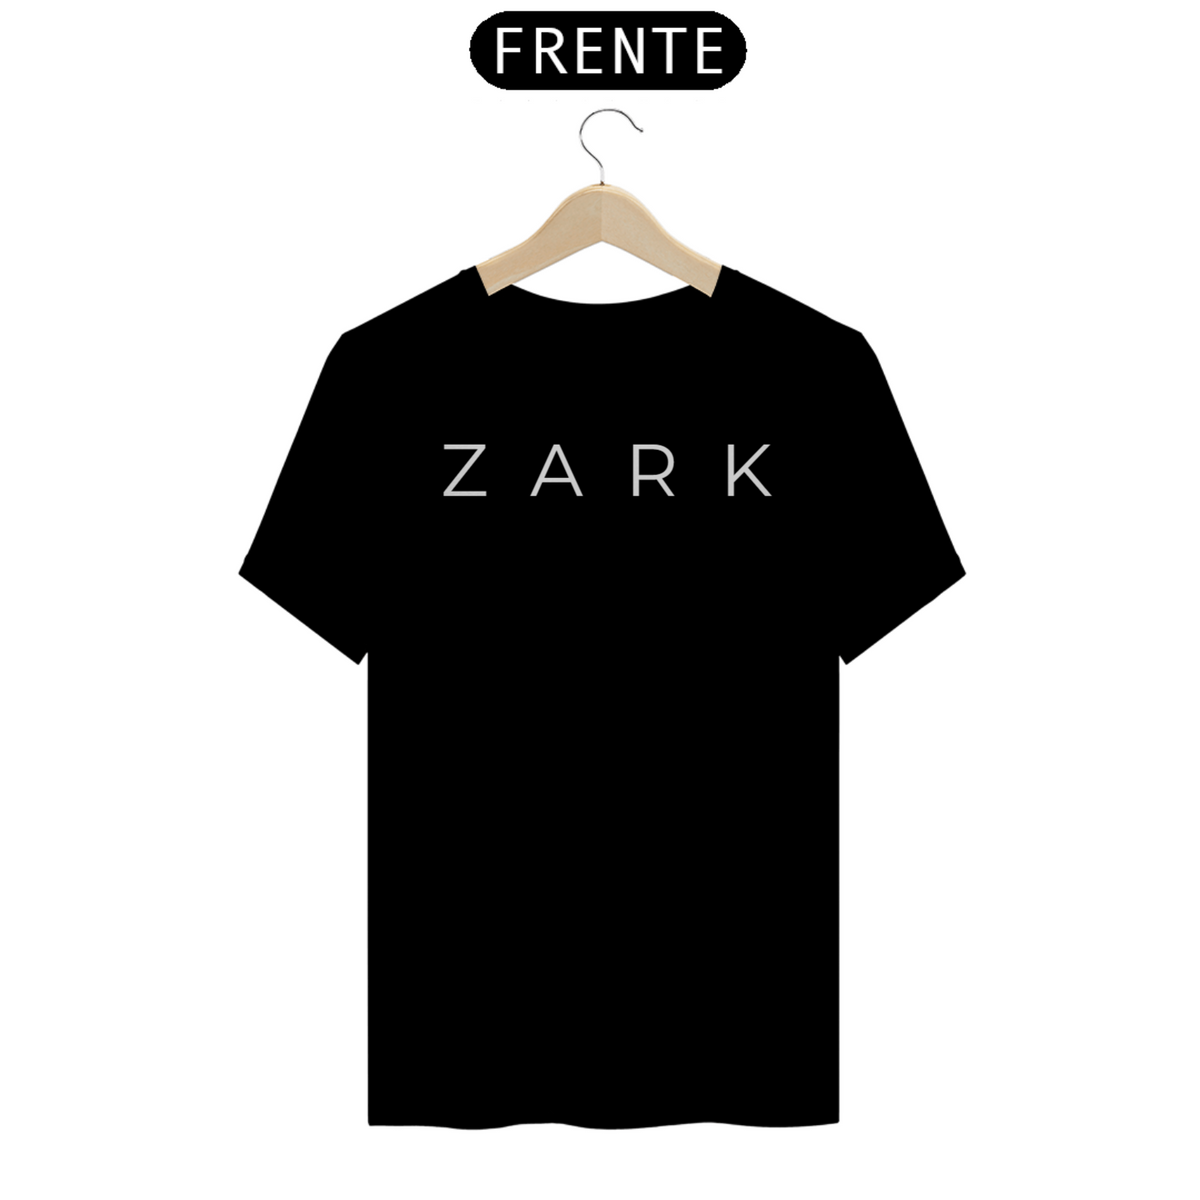 Nome do produto: T-Shirt Day One Zark (Escrita Branca)